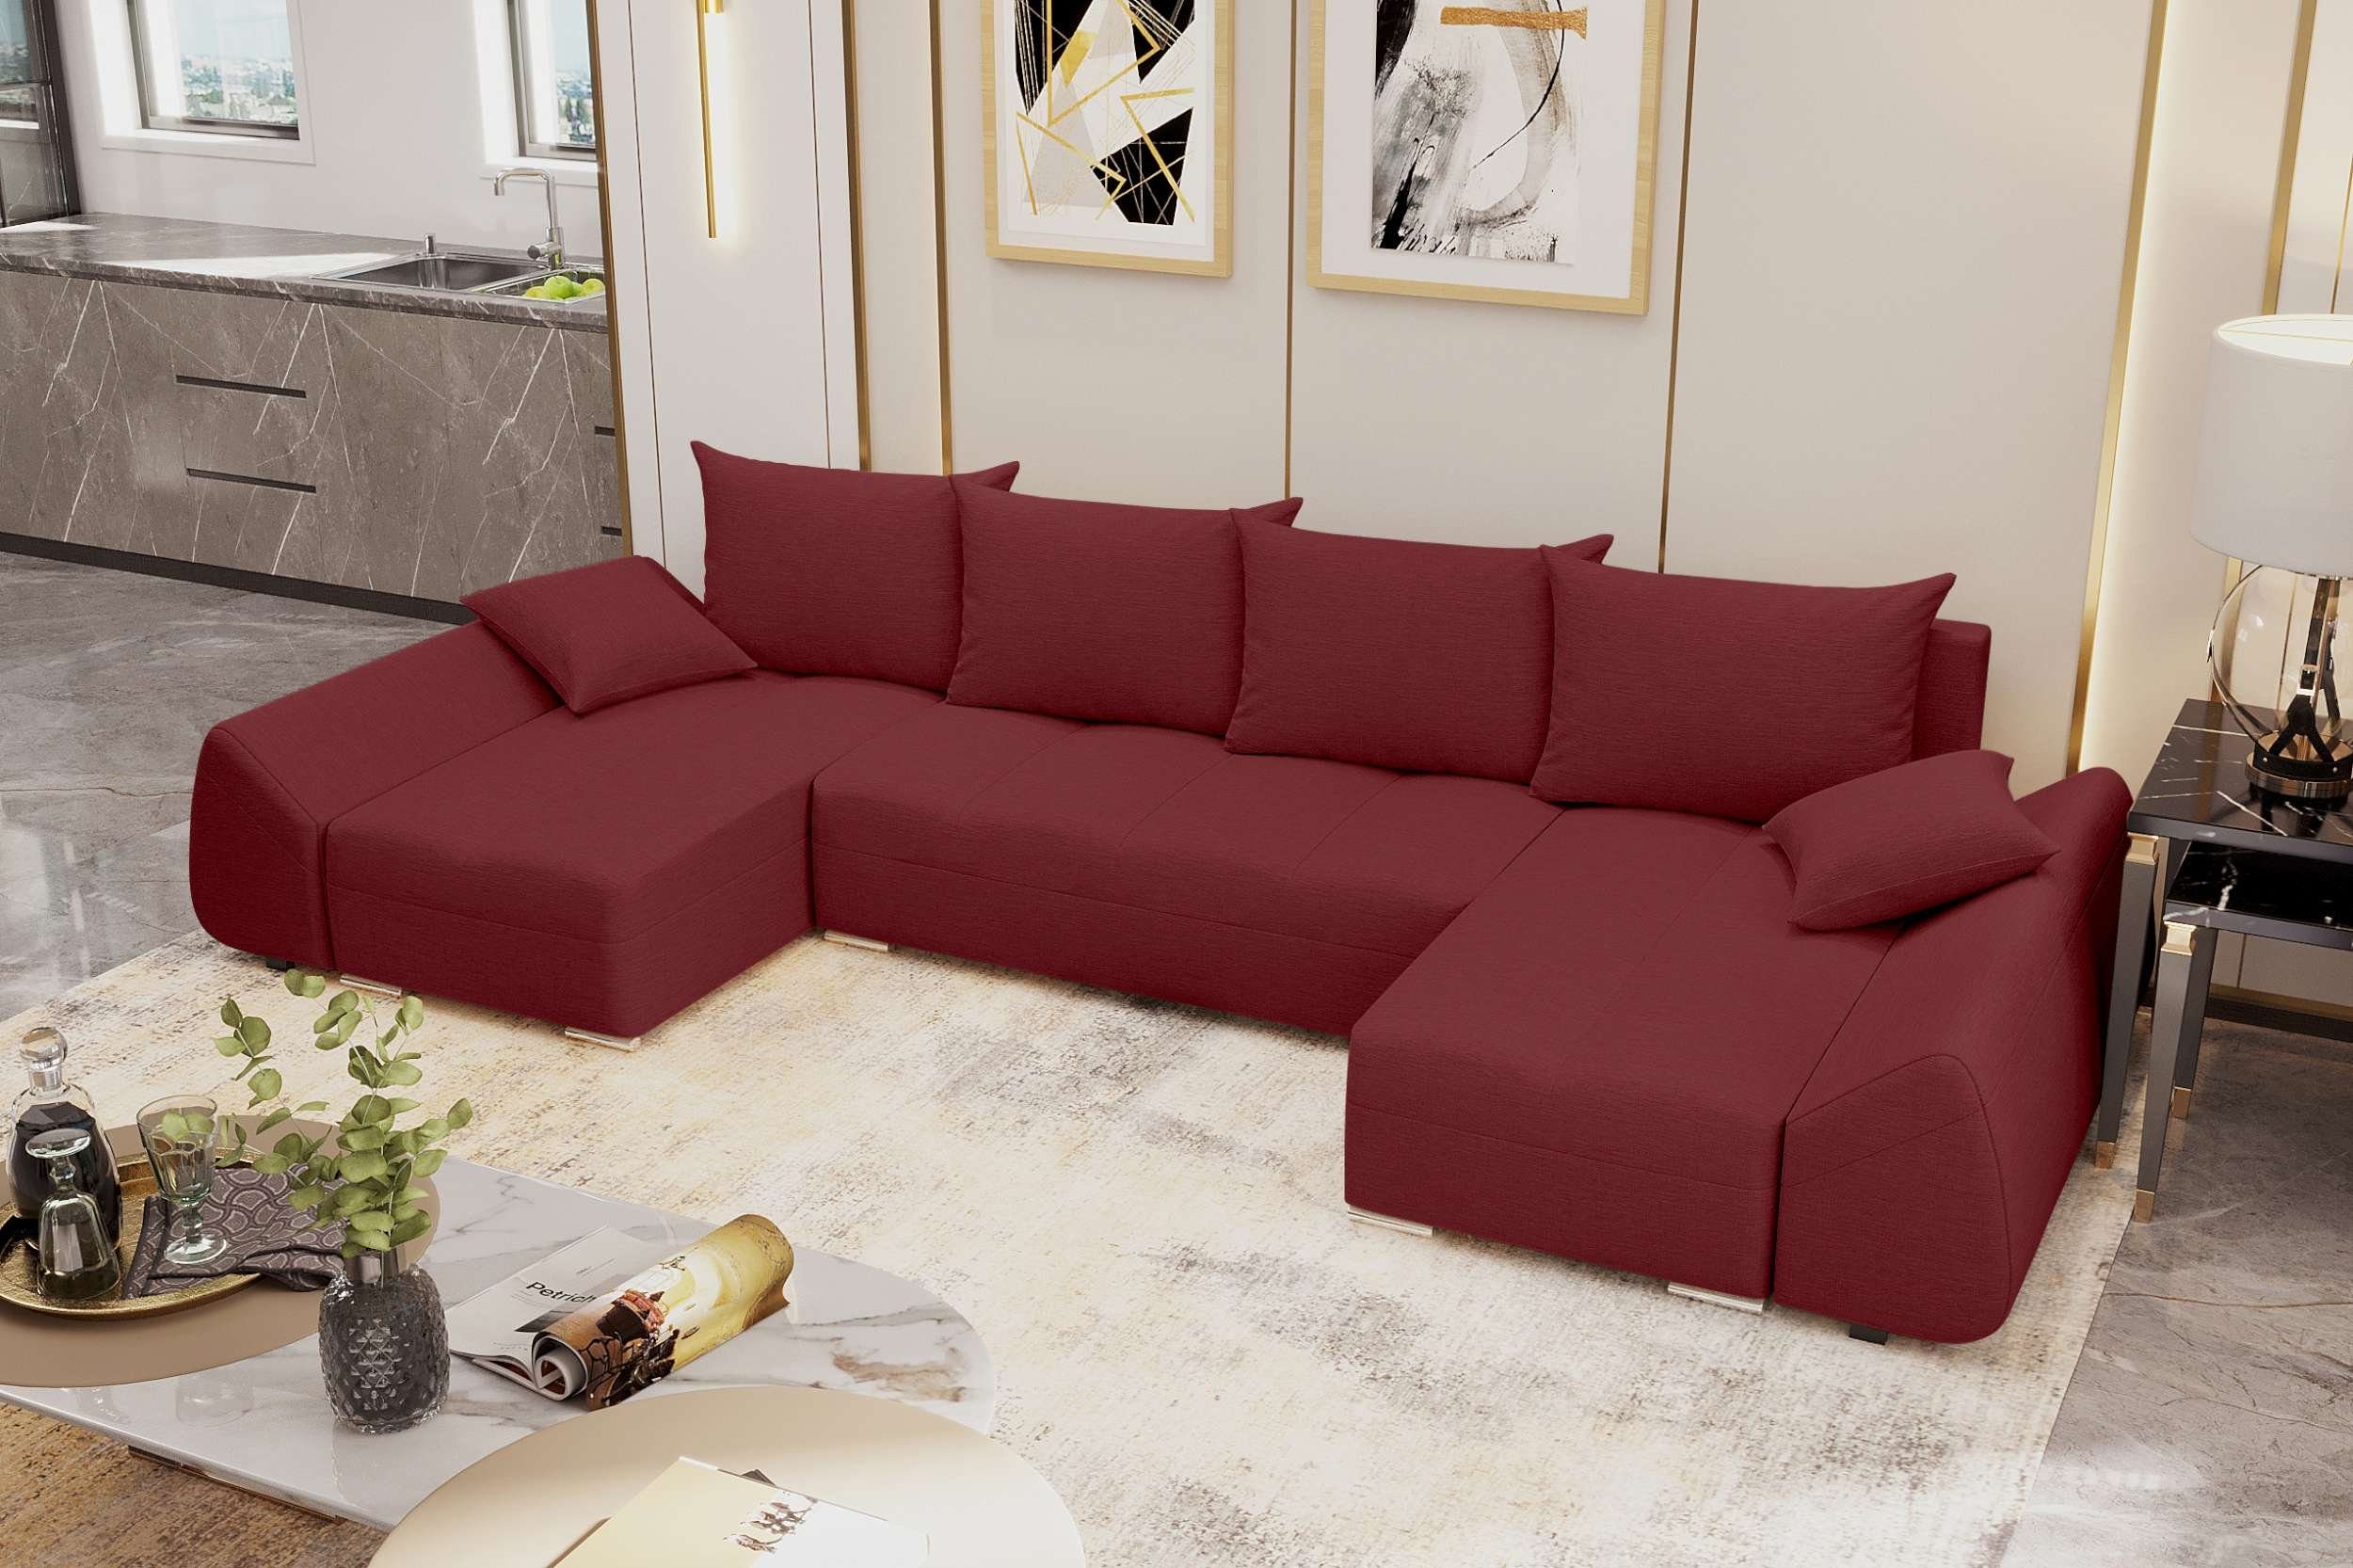 Stylefy Wohnlandschaft mit Bettkasten, Madeira, Sitzkomfort, Eckcouch, mit Modern U-Form, Bettfunktion, Design Sofa